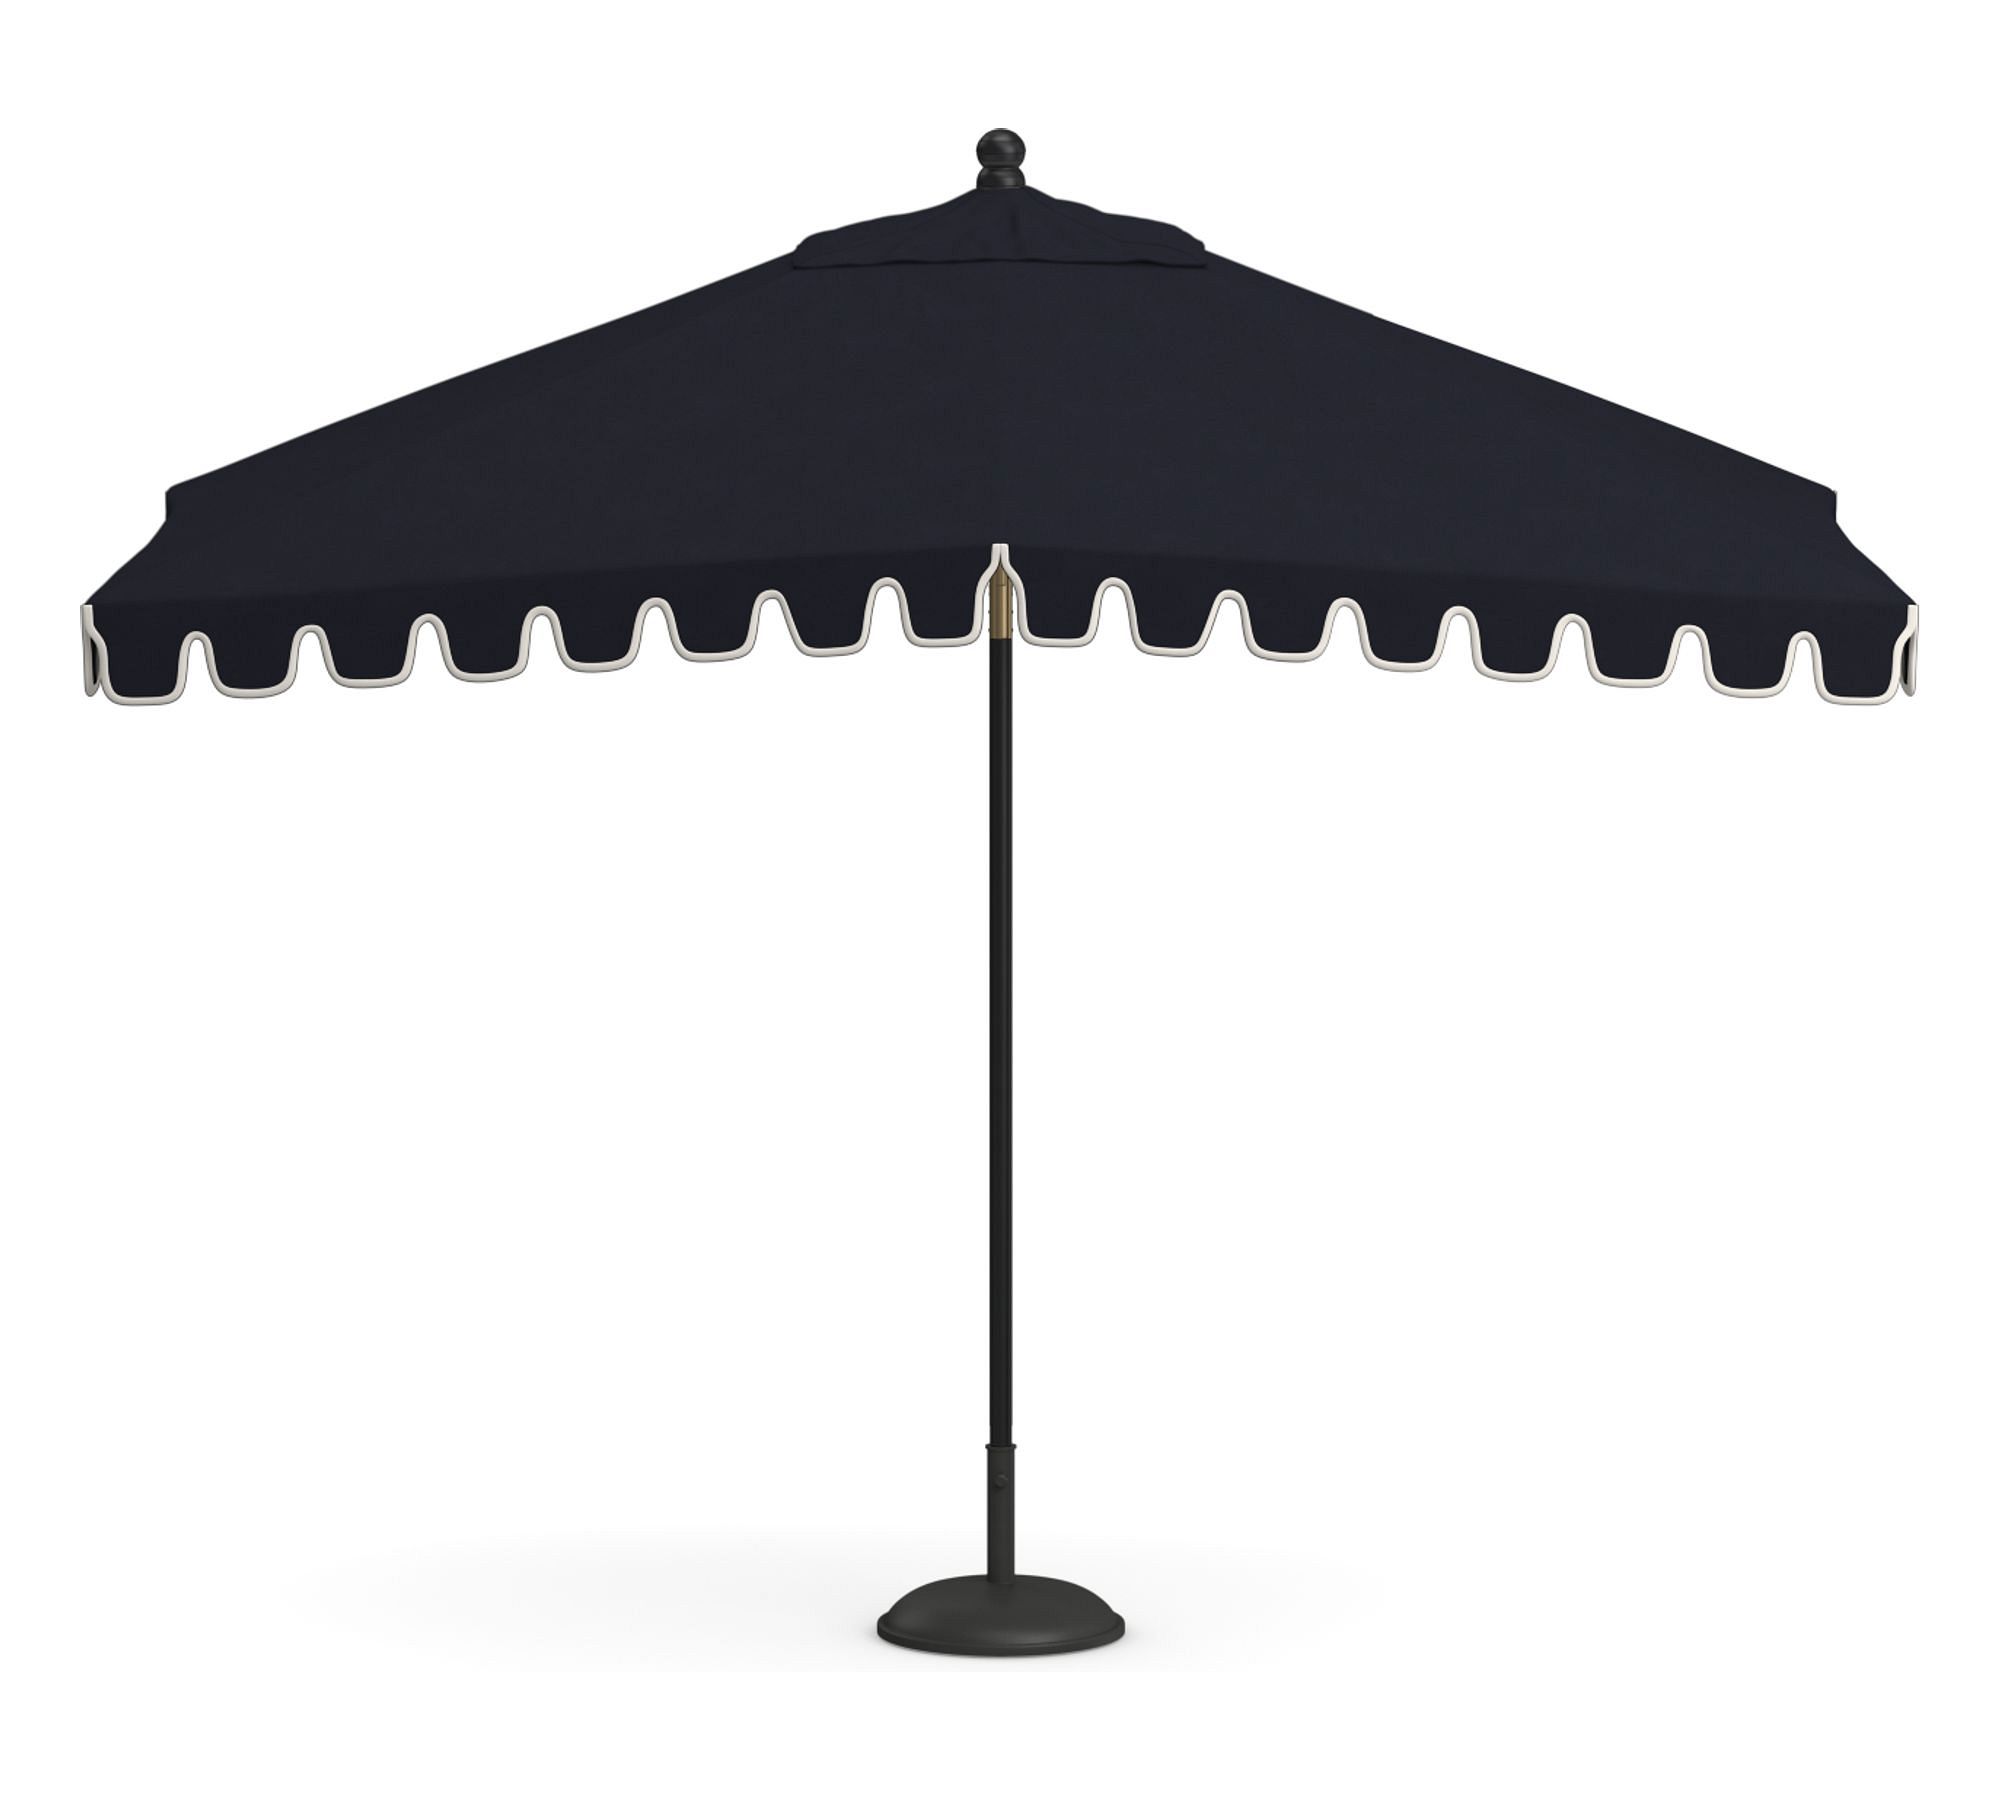 Premium 10' Rectangular Portofino Patio Umbrella – Rustproof Aluminum Frame